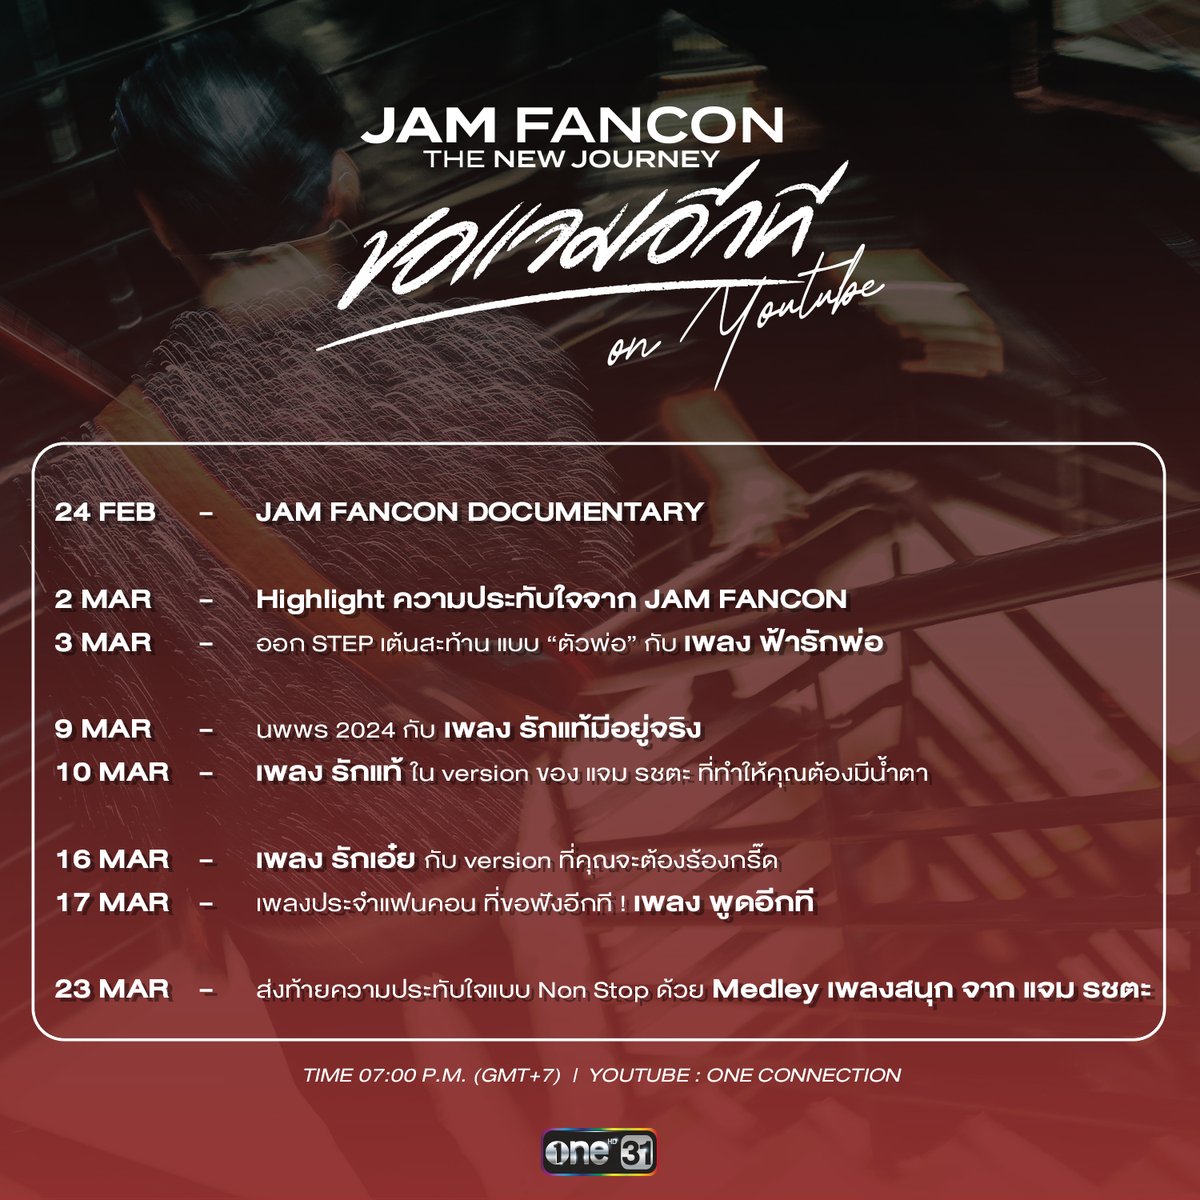 ไม่มูฟออน !! 
ใครอยากฟินอีกที เตรียมตัวไว้ให้ดี

JAM FANCON The New Journey 
ขอแจมอีกที on Youtube

สนุกพร้อมกันผ่านหน้าจอ เริ่ม 24 ก.พ.นี้
ทาง One Connection

#ขอแจมอีกทีonYoutube
#JAMFANCON2024
#แจมรชตะ
#JAMRACHATA
#OneConnection